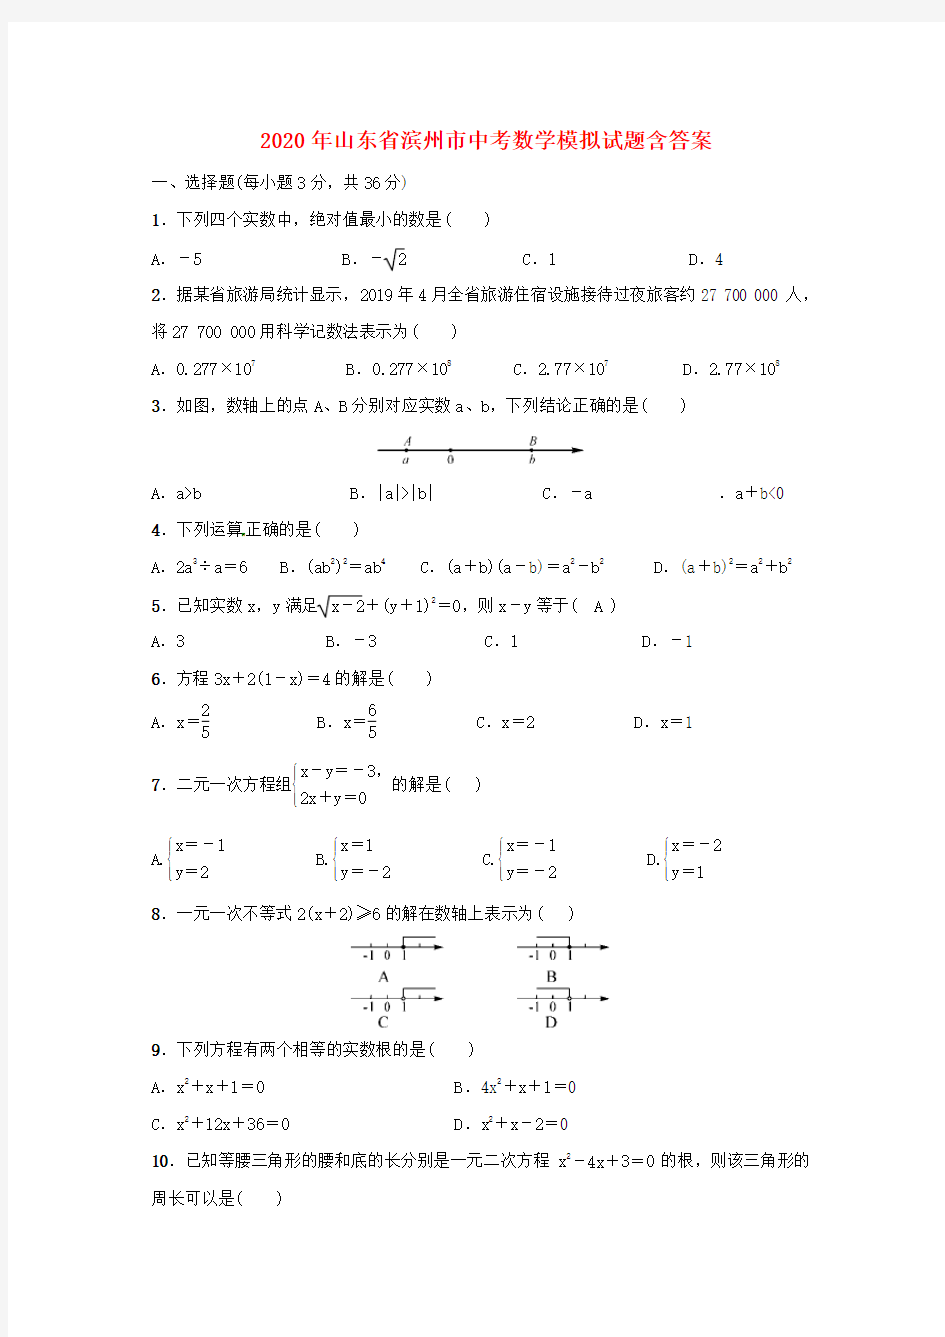 【2020年】山东省中考数学模拟试题 (含答案)